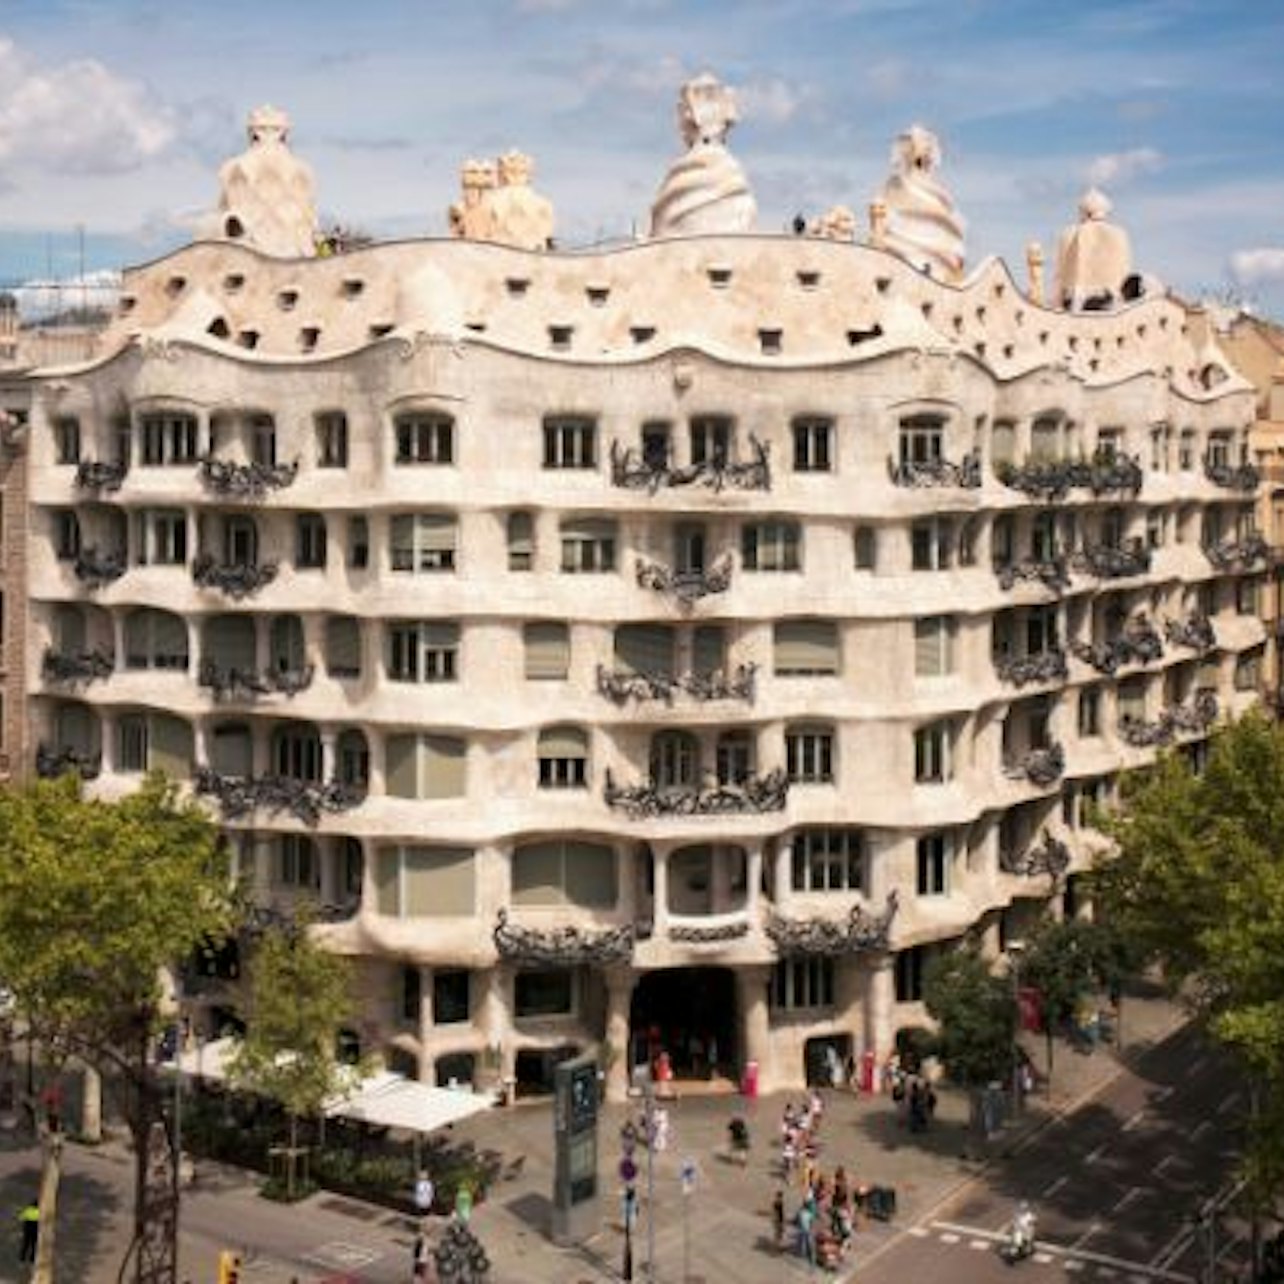 La Pedrera: Experiencia completa, Sin colas + Audioguía + Experiencia virtual - Alojamientos en Barcelona